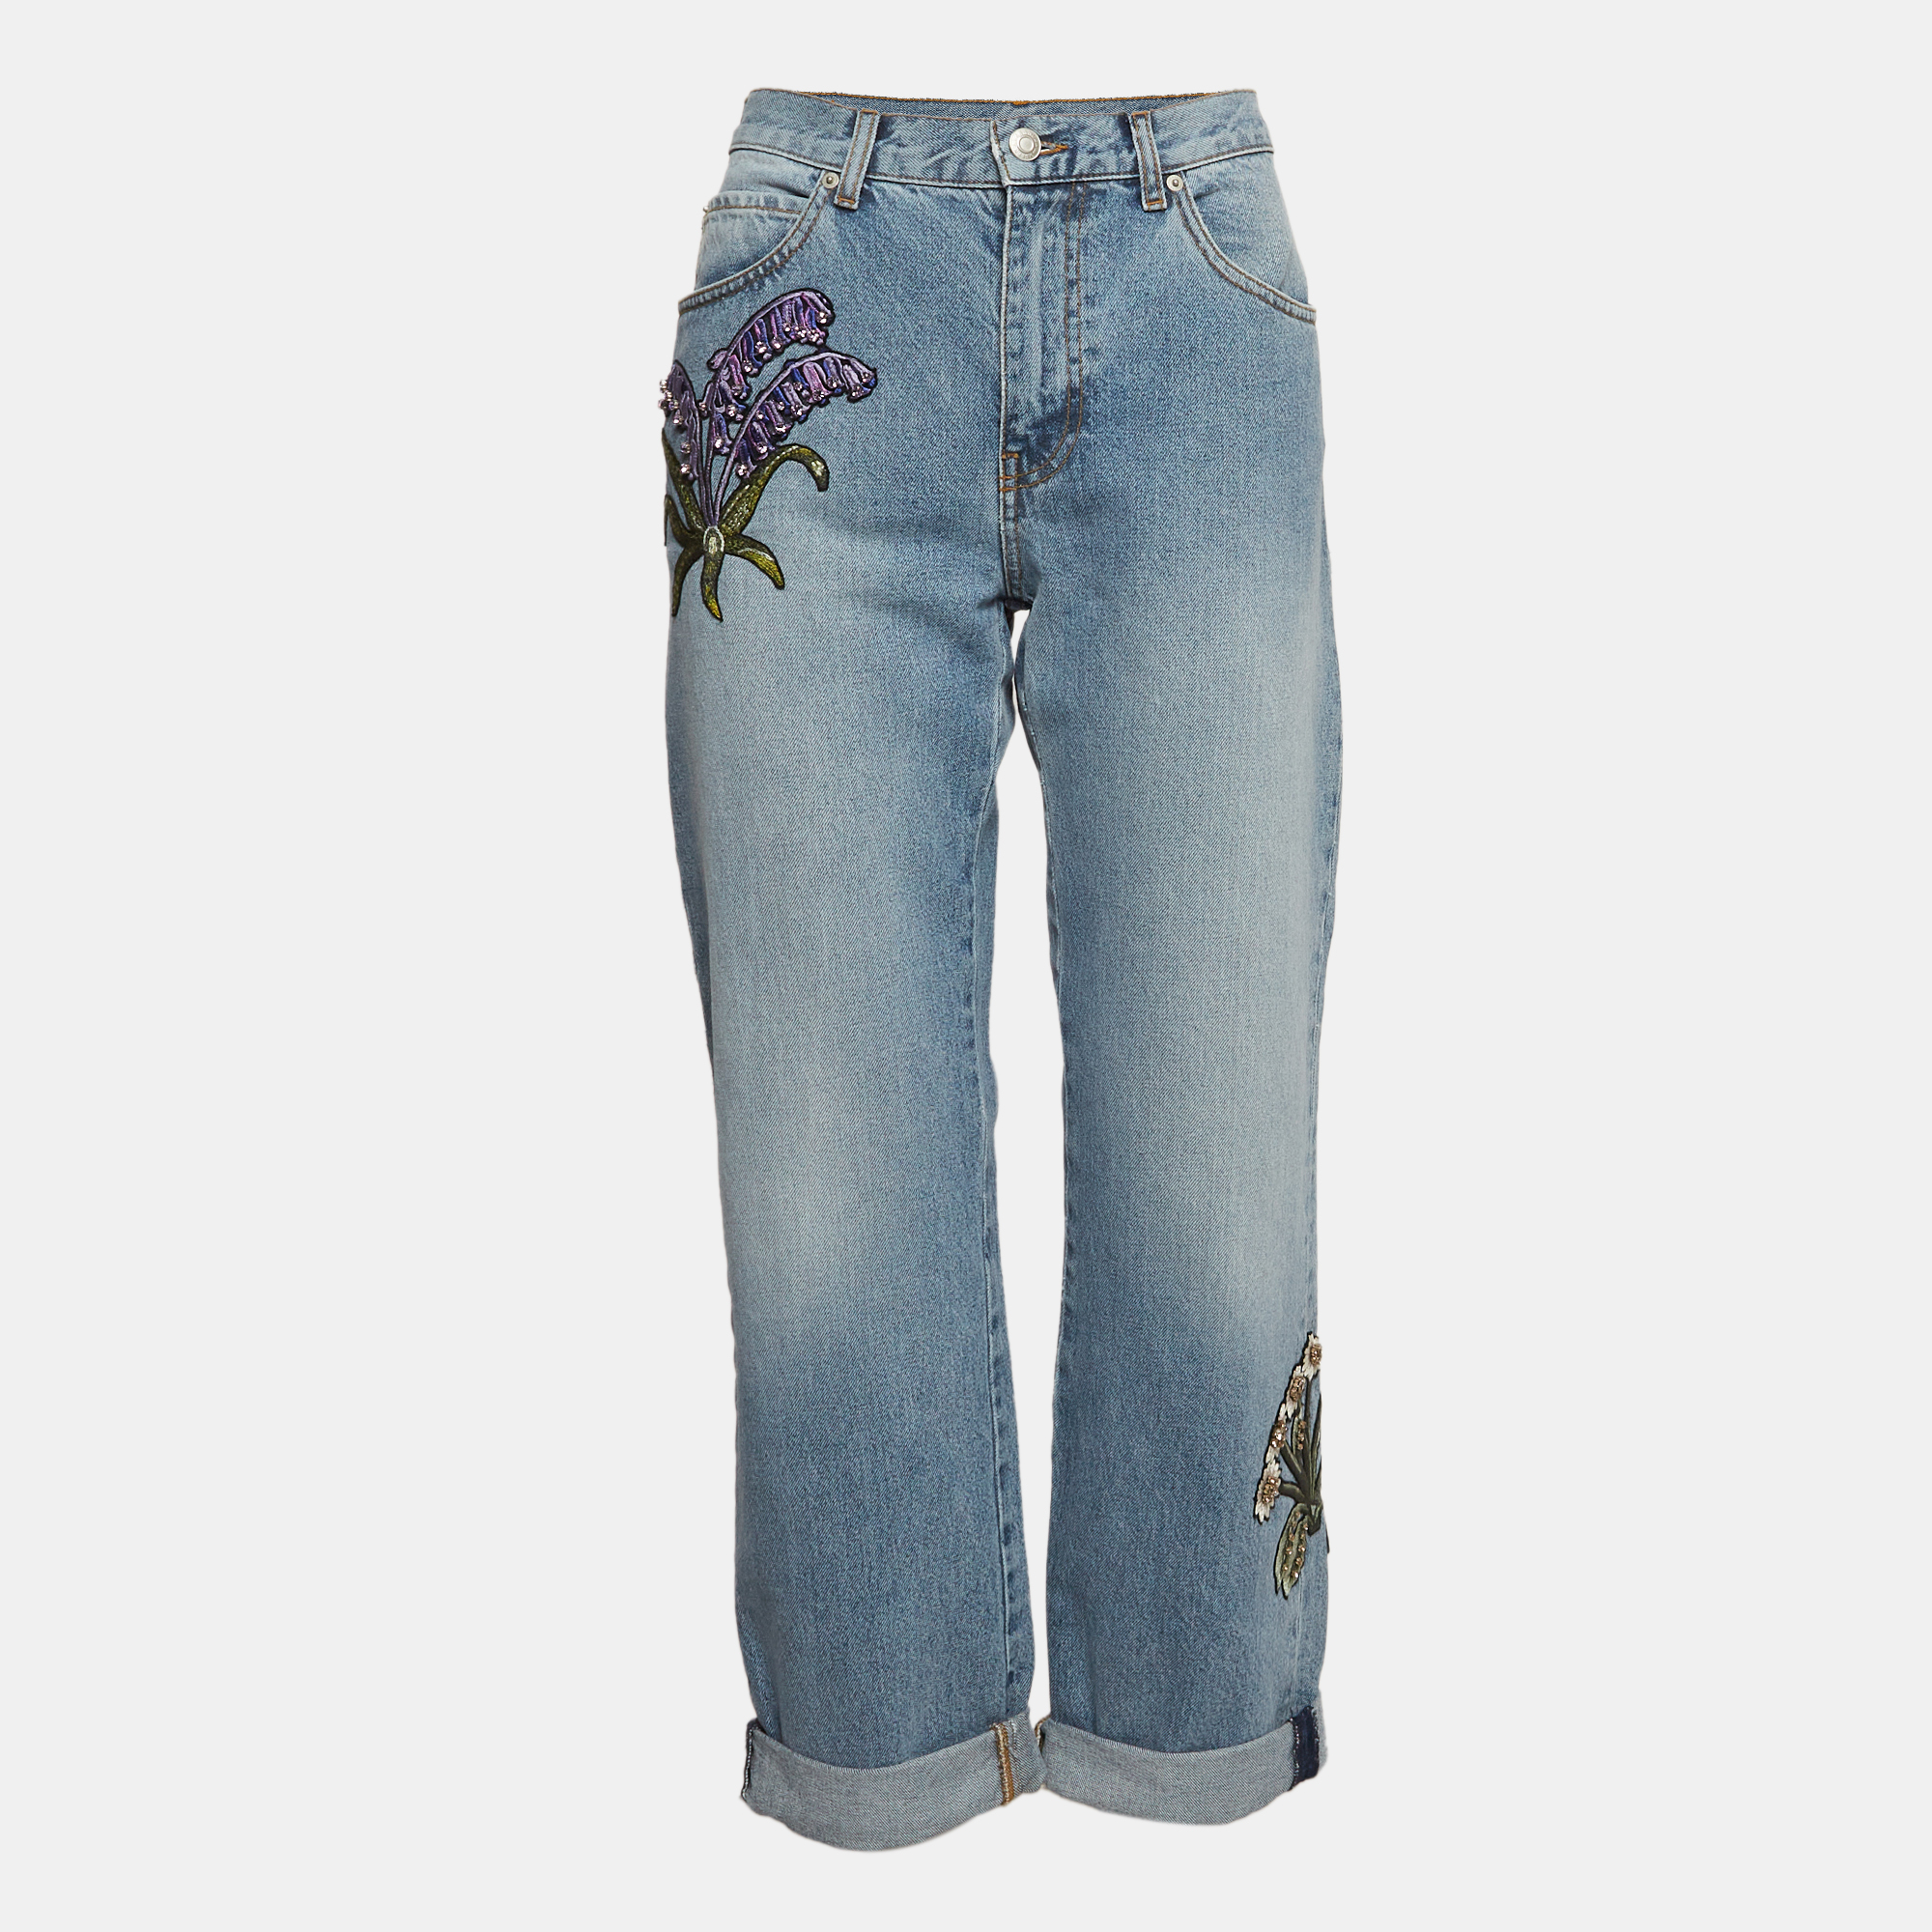 

Alexander McQueen Blue Embroidered Floral Denim Boyfriend Jeans S Waist 28"